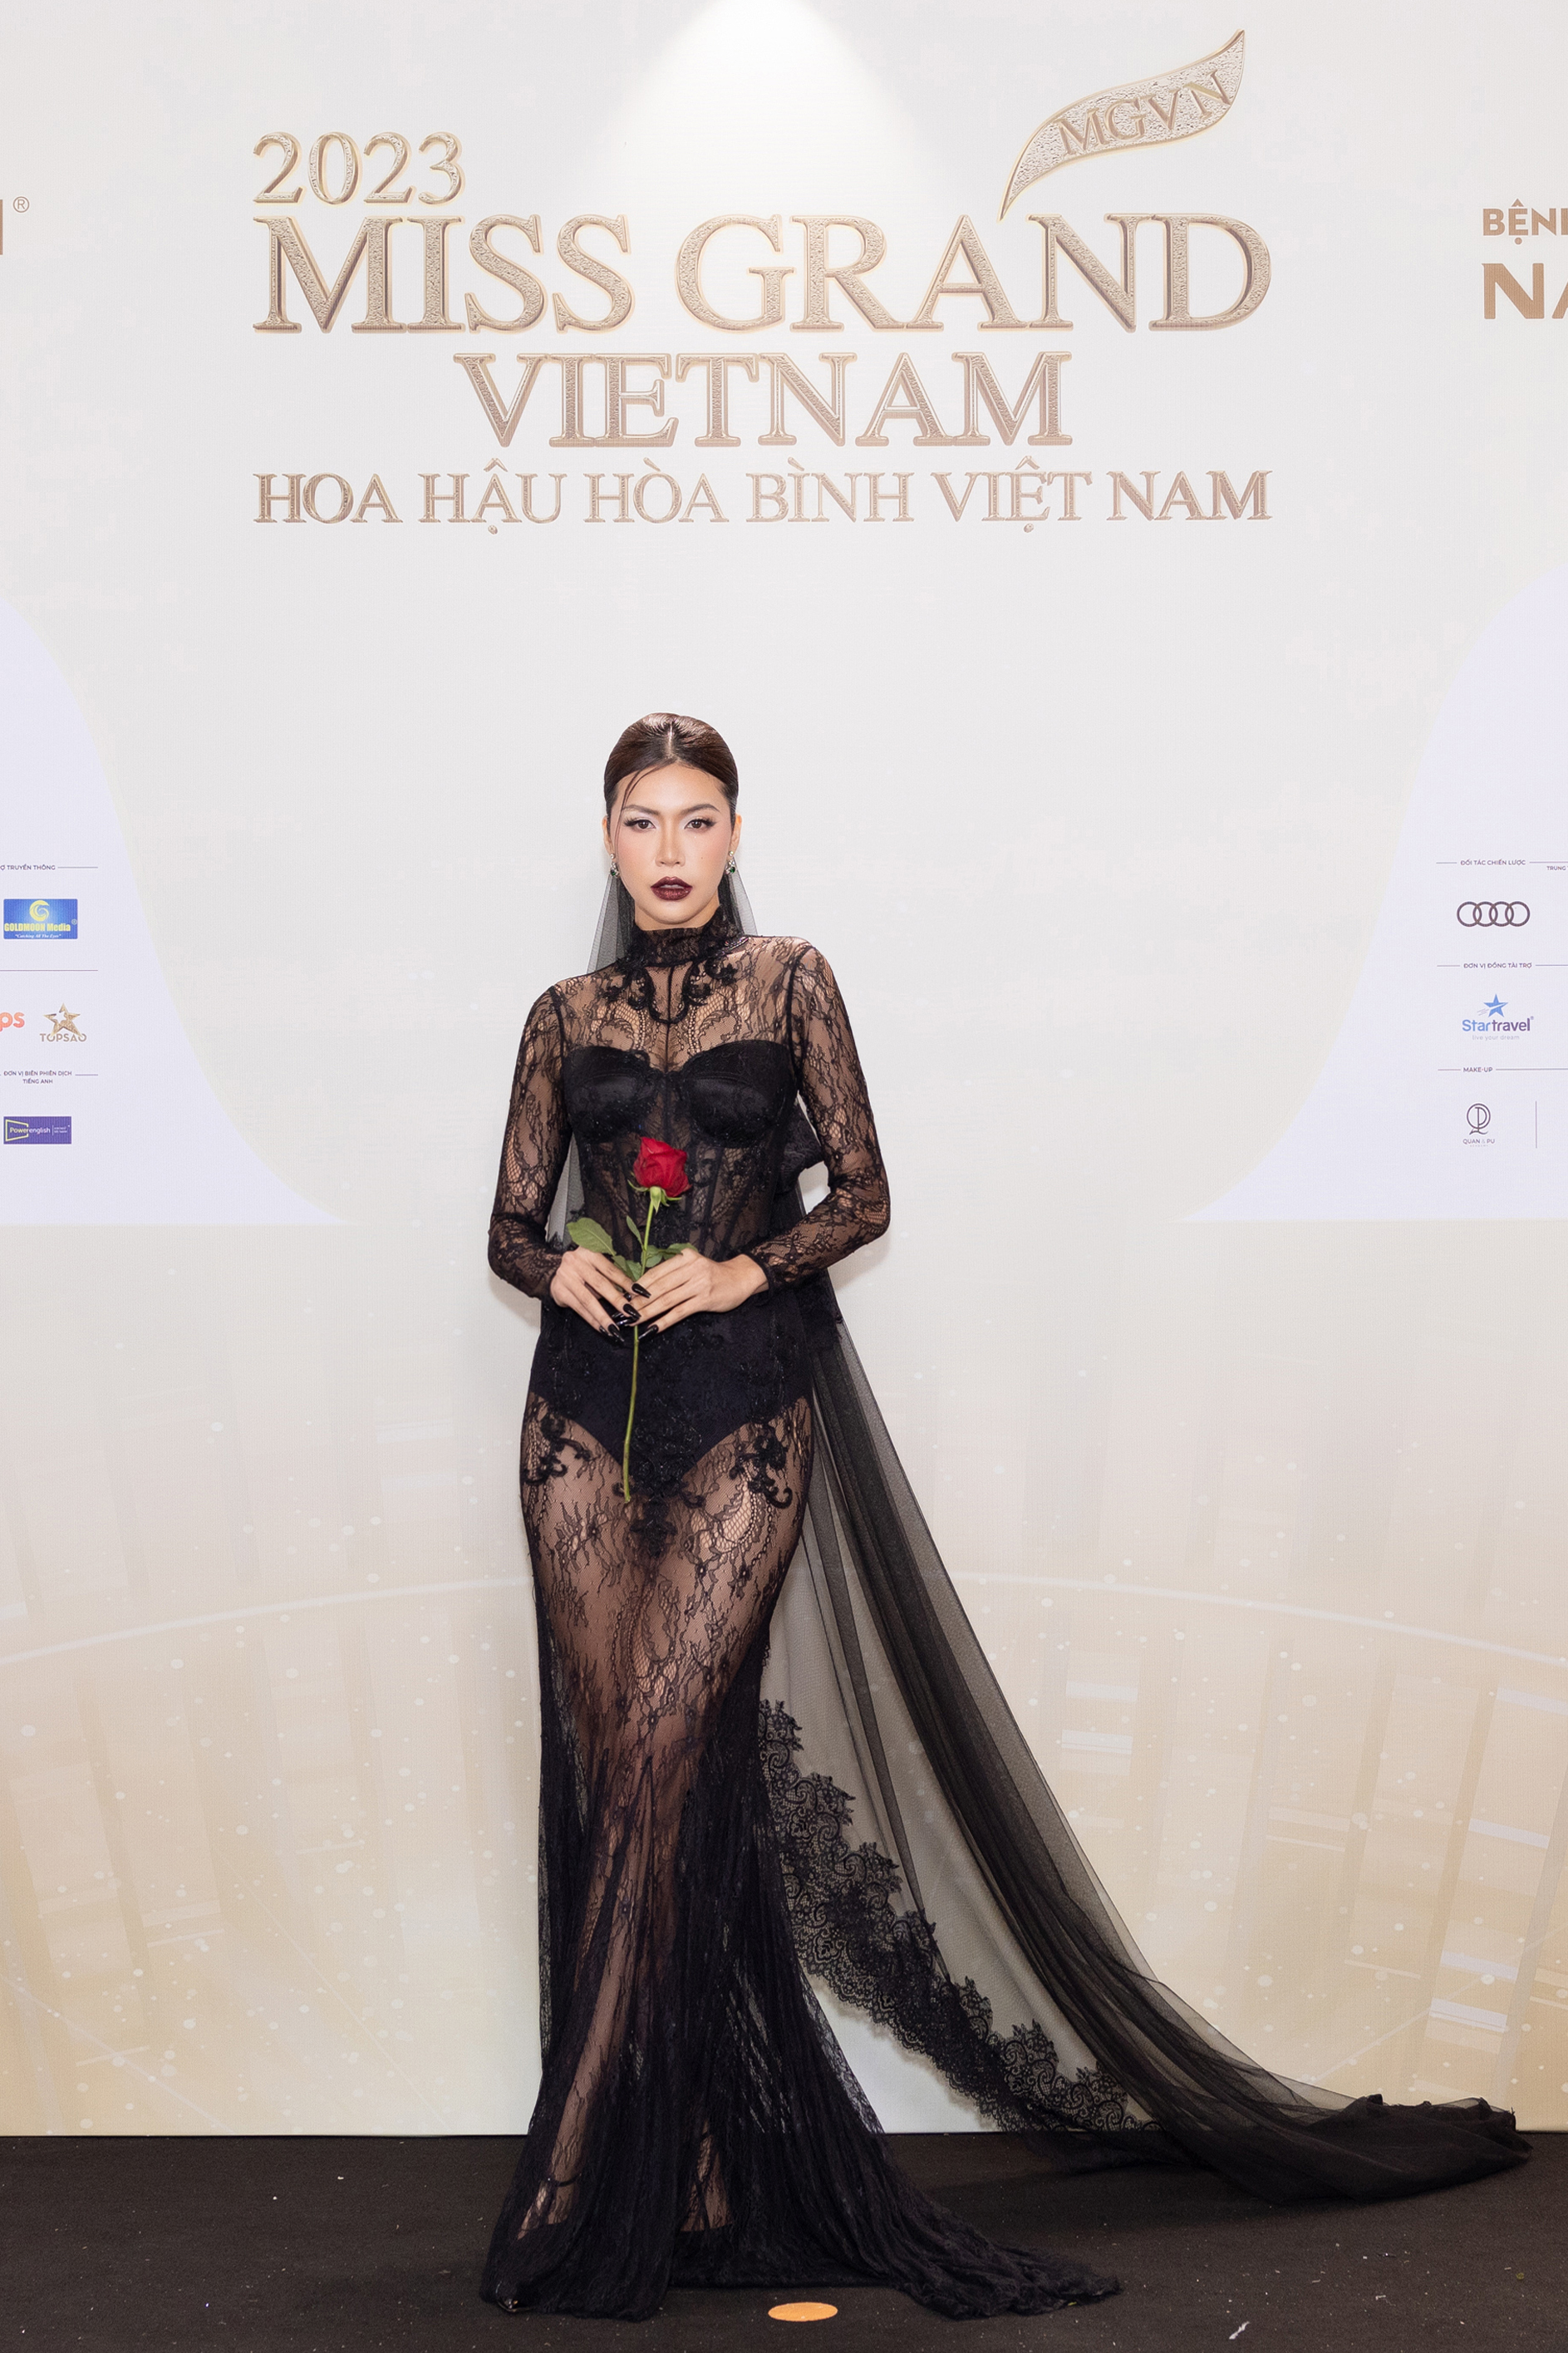 Thảm đỏ chung kết Miss Grand Vietnam 2023: Vợ chồng Trường Giang Nhã Phương đi cùng bạn trai tin đồn của Đoàn Thiên Ân - ảnh 3